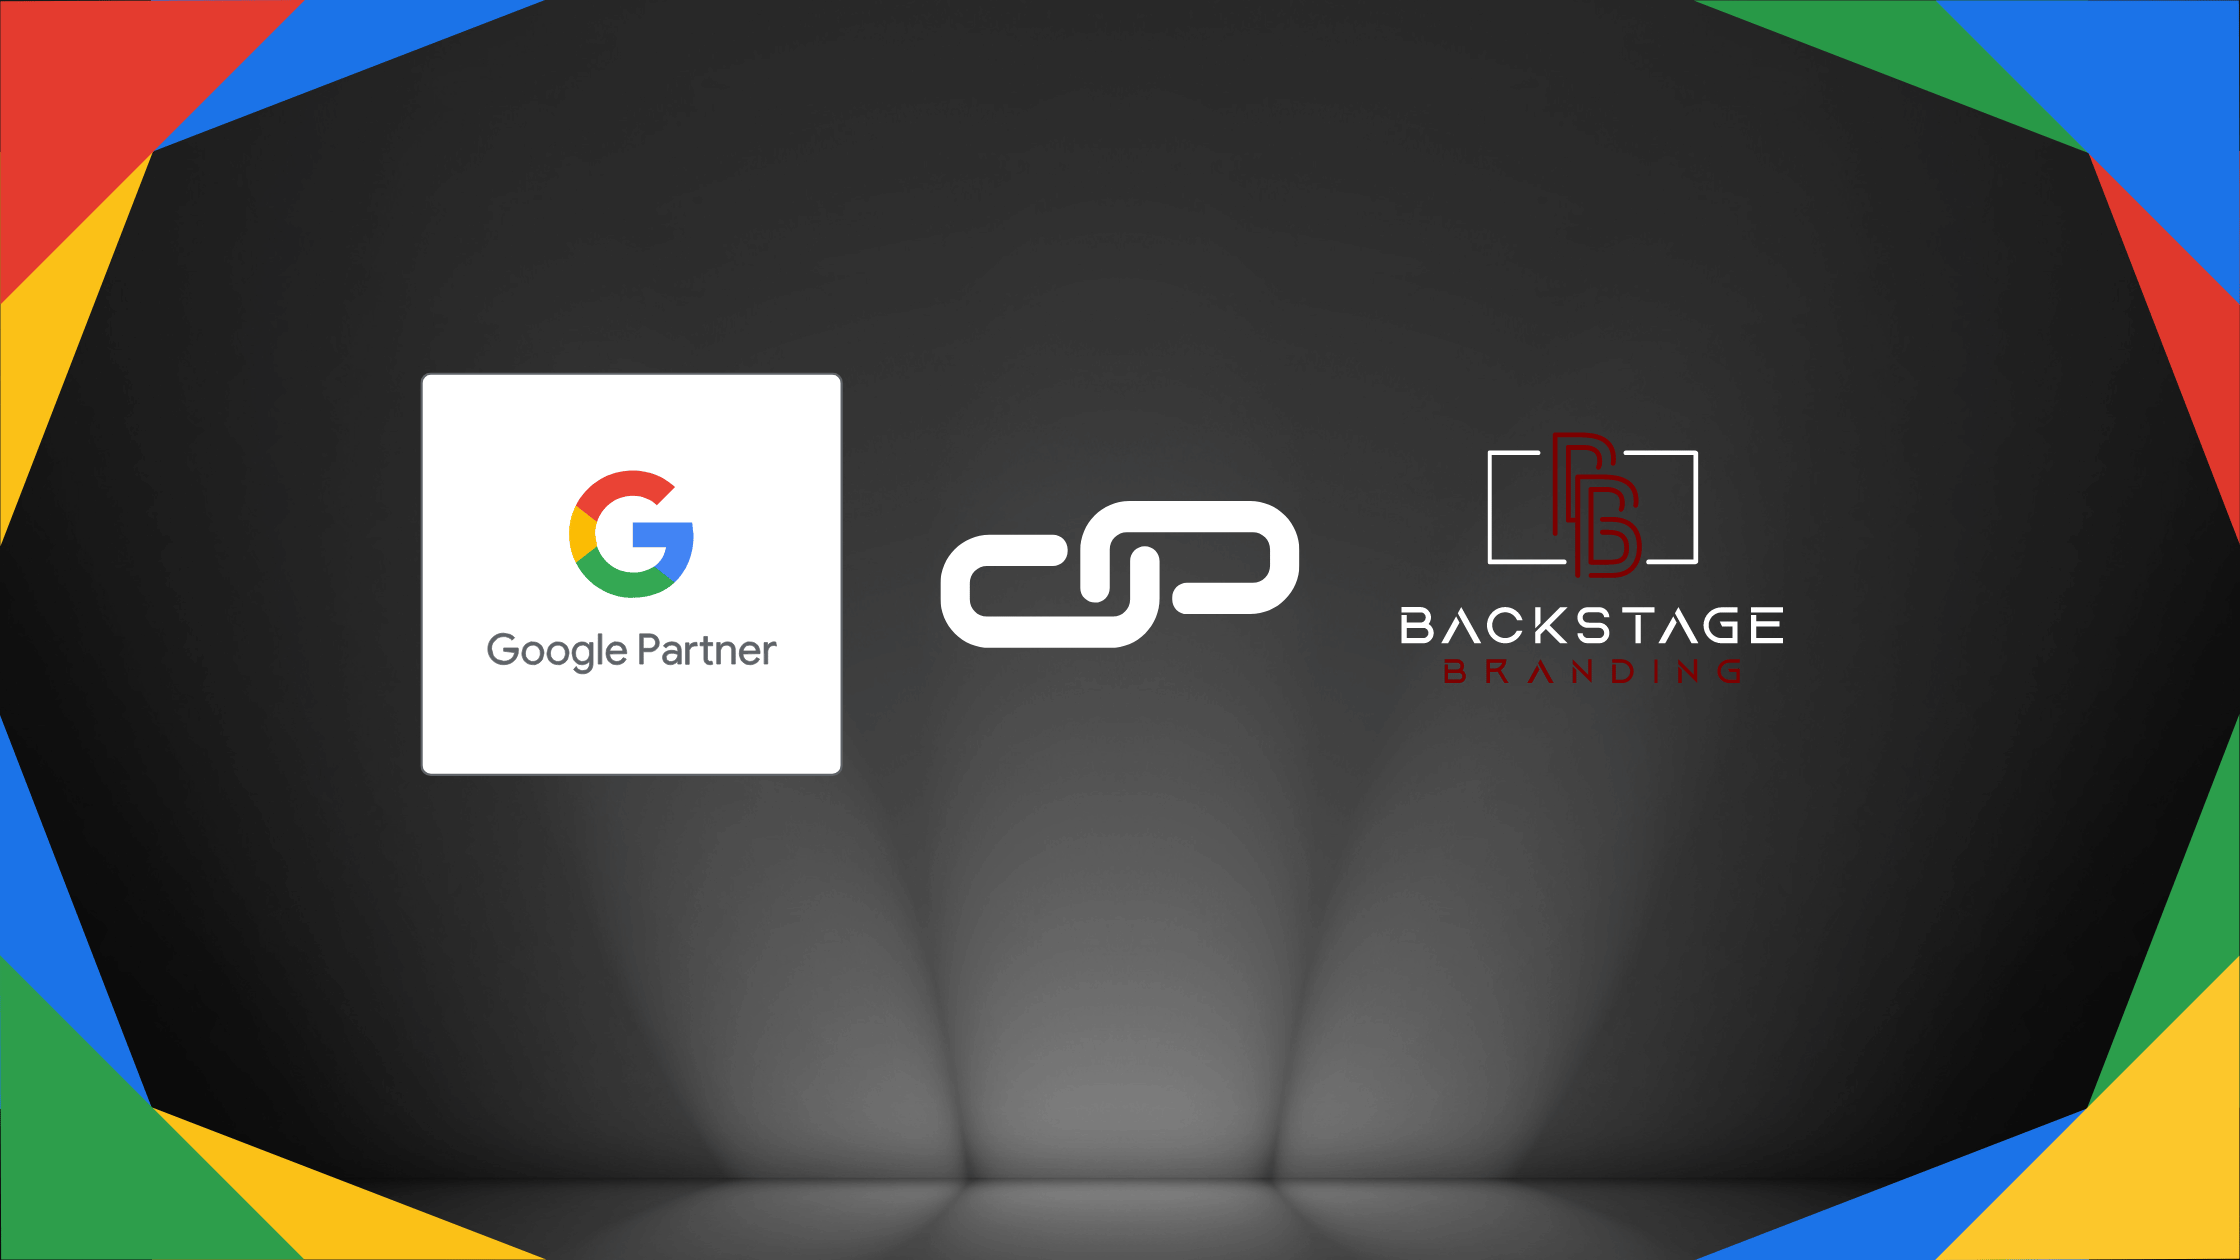 Backstage Branding ist Google Partner Blog